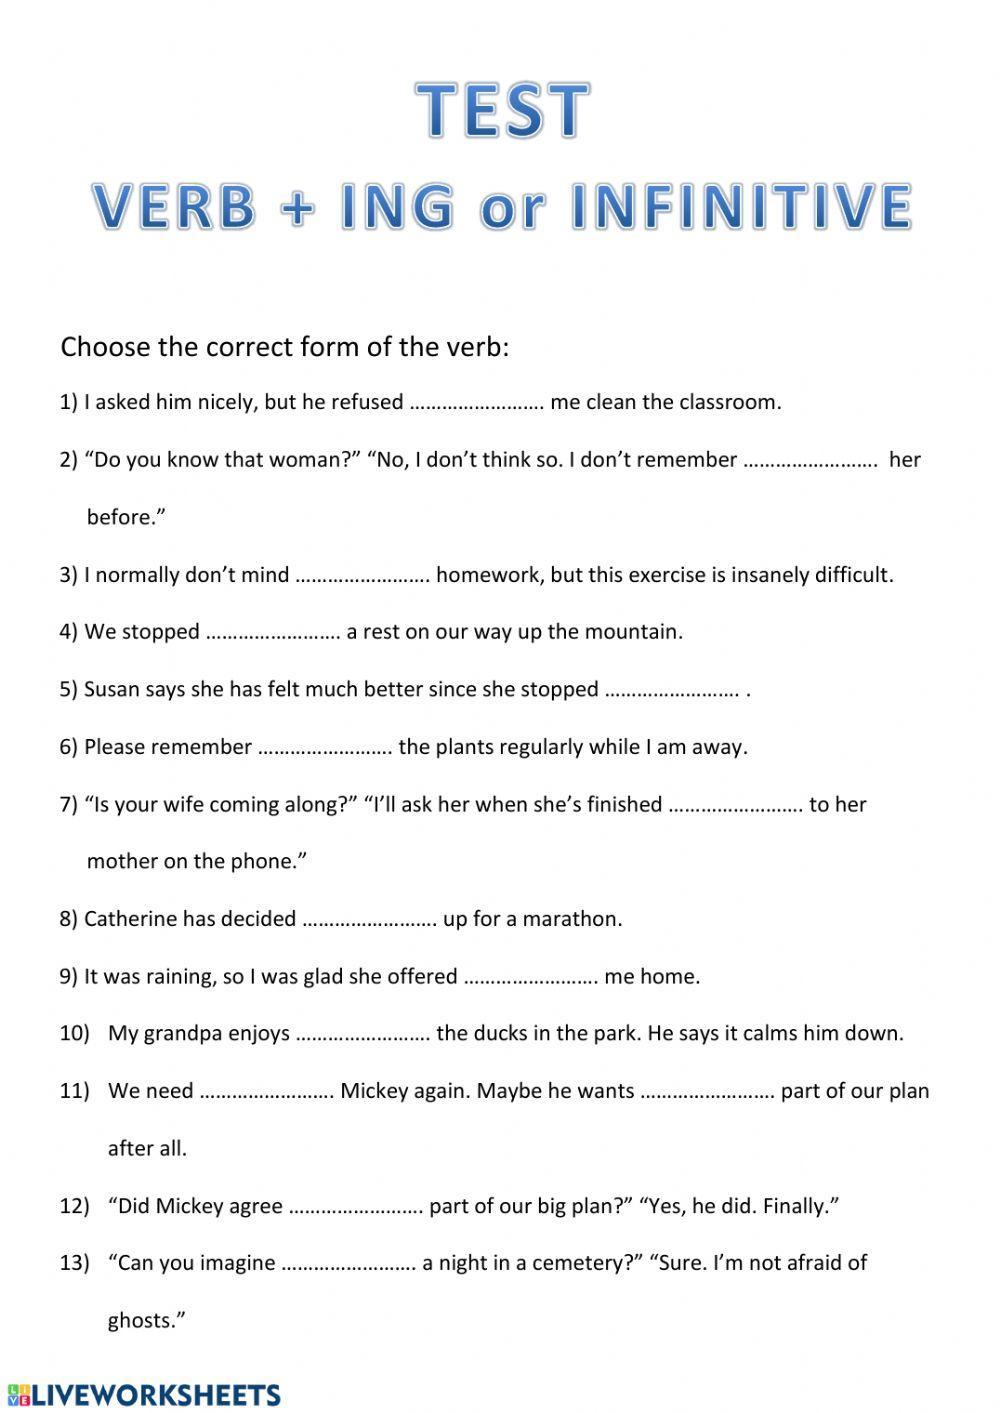 Verb + ing or infinitive